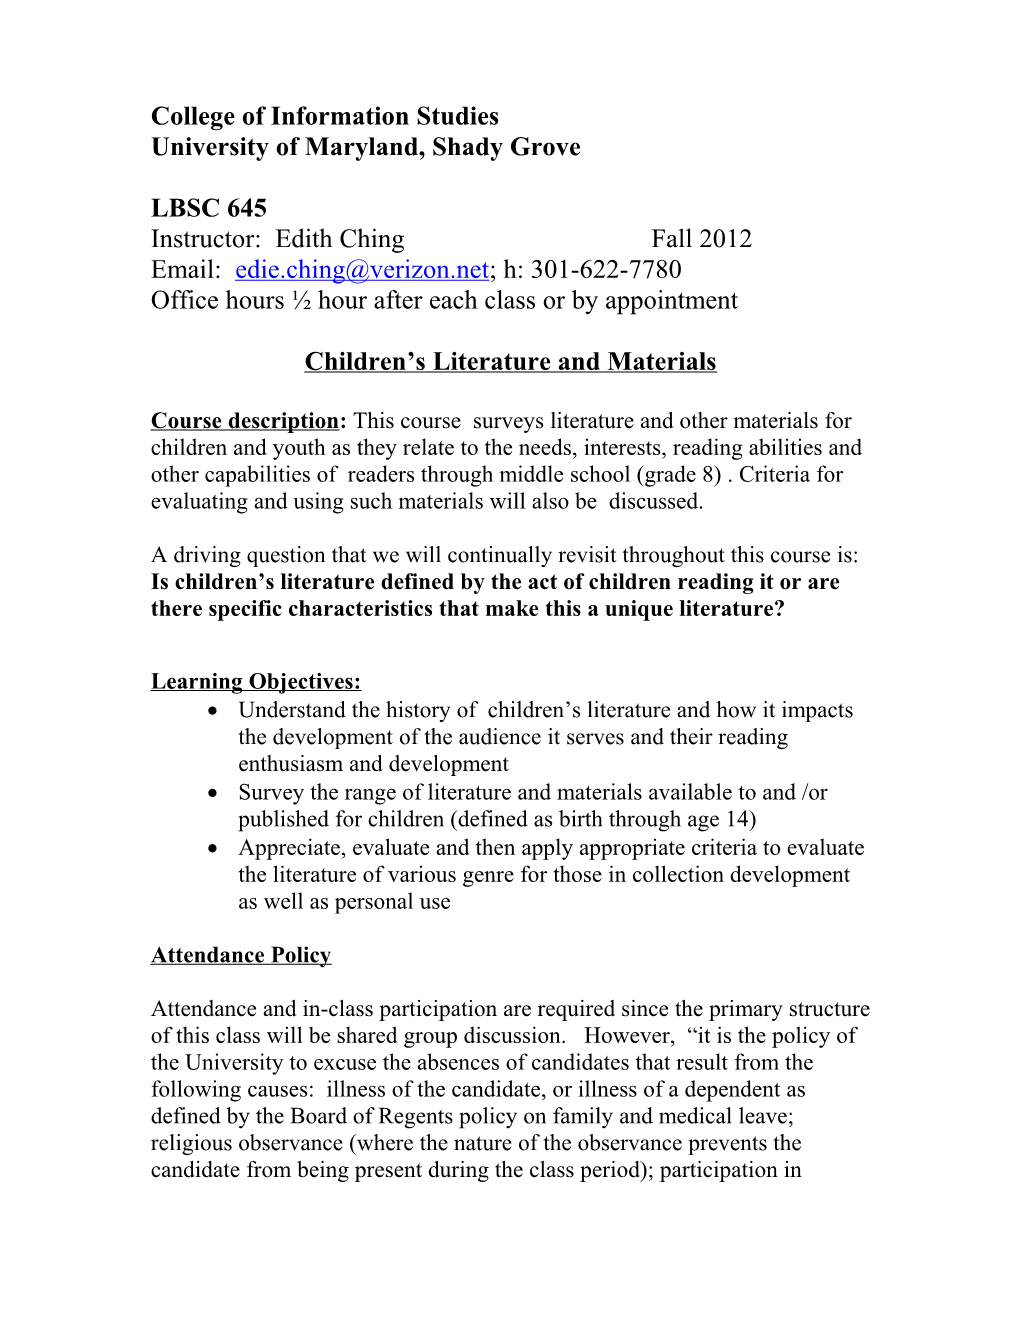 Topics for Children S Literature Course